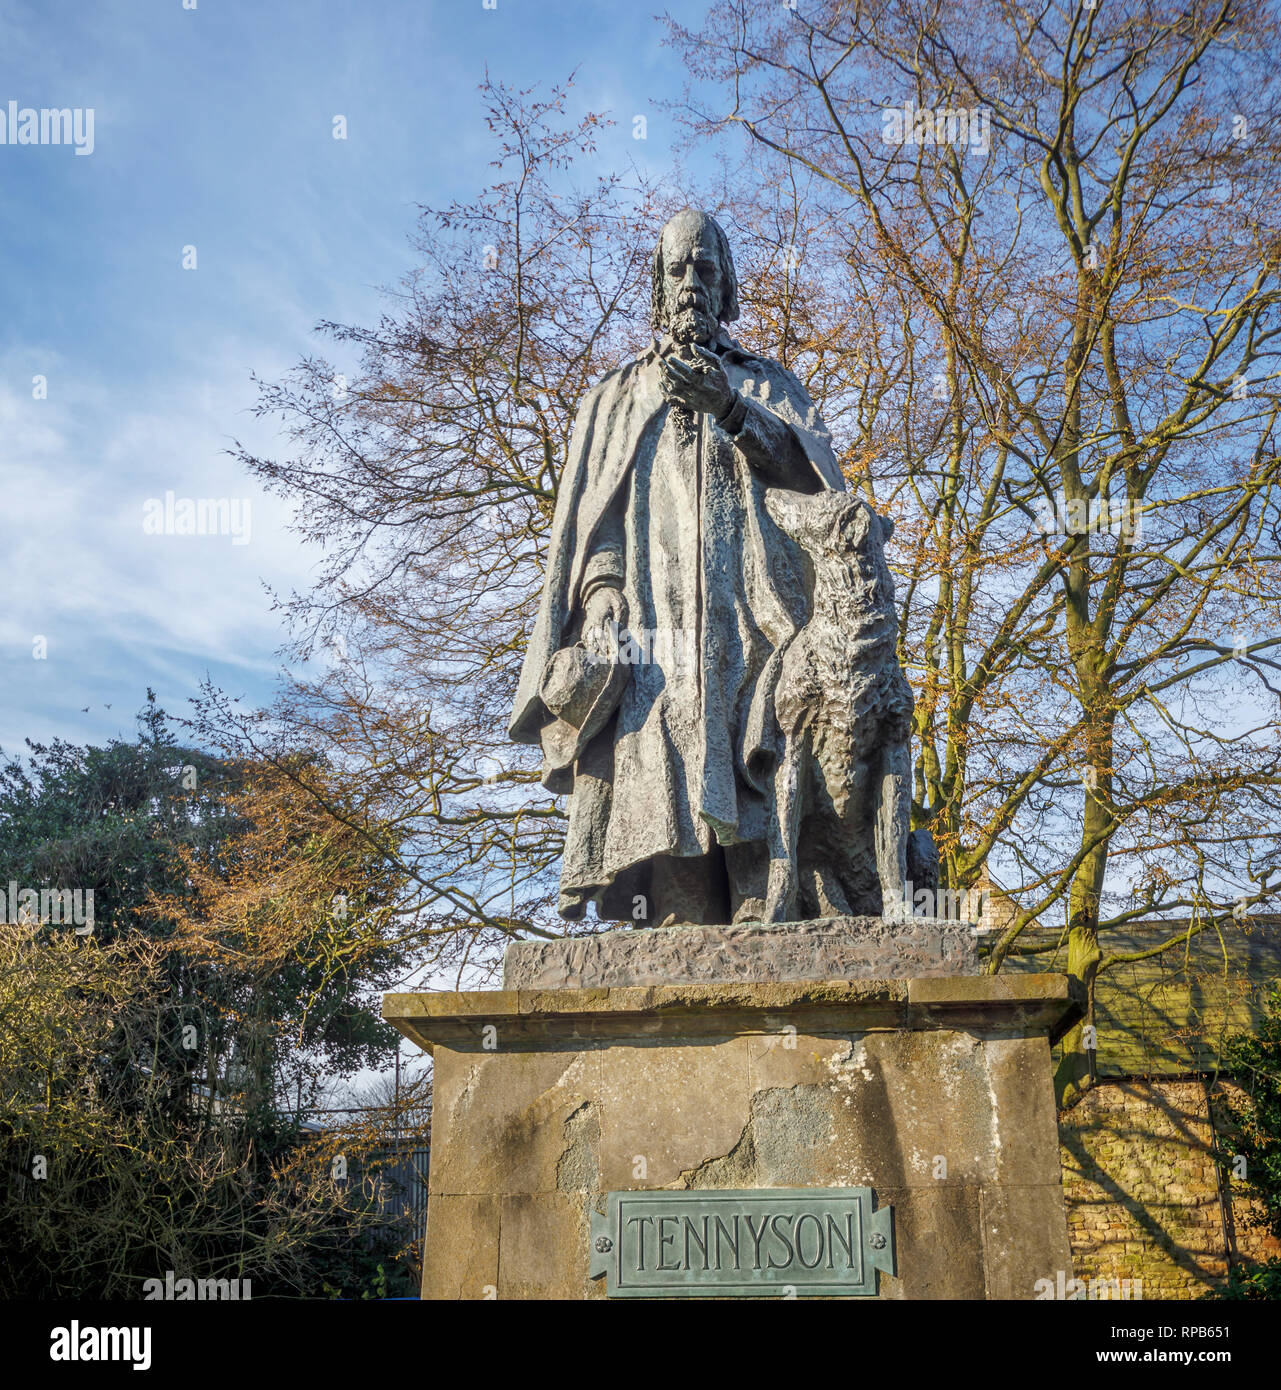 La statue commémorative de Tennyson avec son chien Karénine sur vert Cathédrale, La Cathédrale de Lincoln, ville de Lincoln, Lincolnshire, East Midlands, Angleterre, RU Banque D'Images